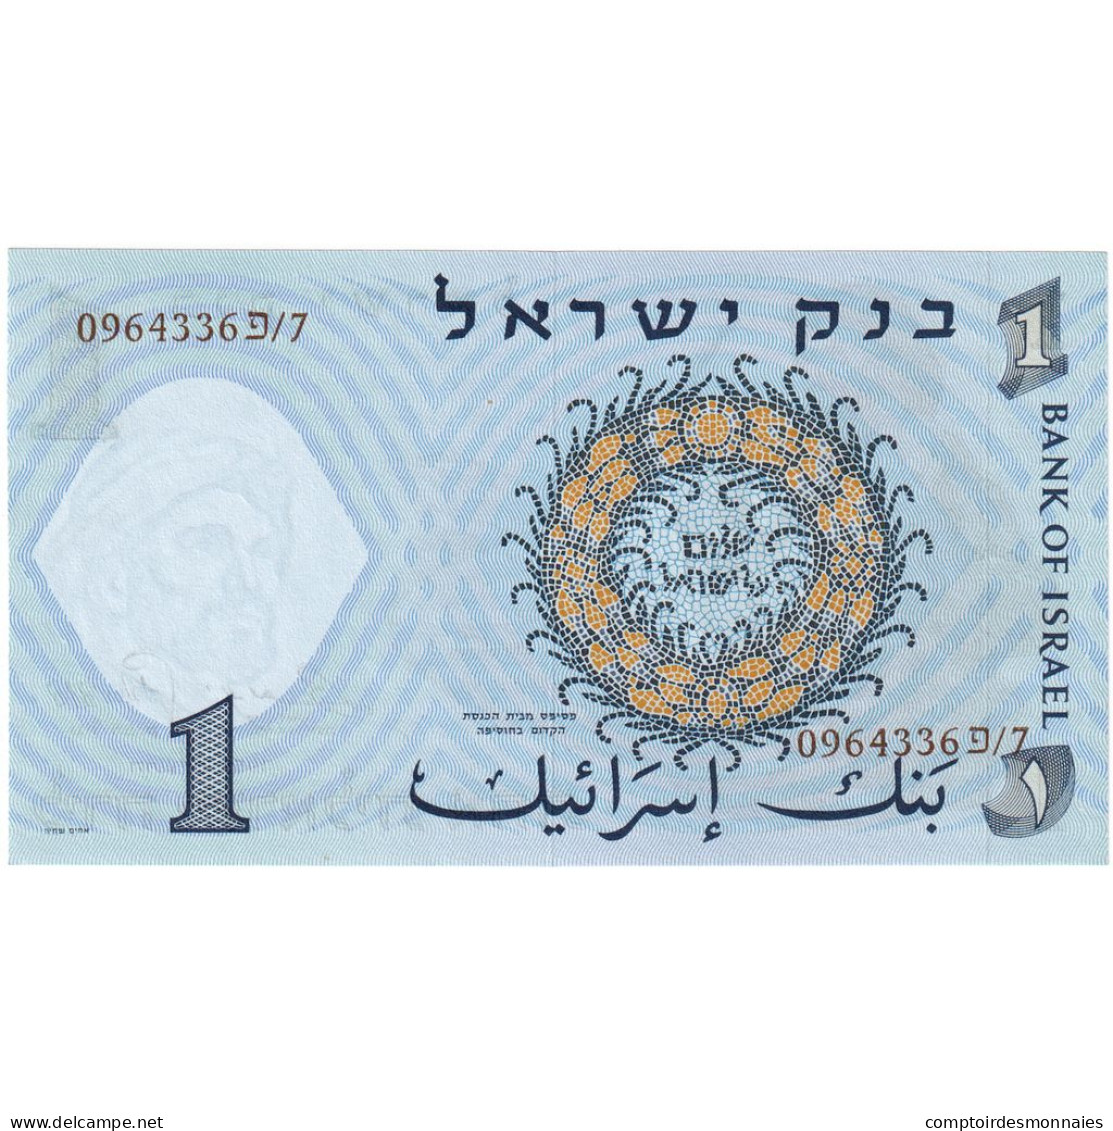 Israël, 1 Lira, 1958, KM:30c, NEUF - Israel